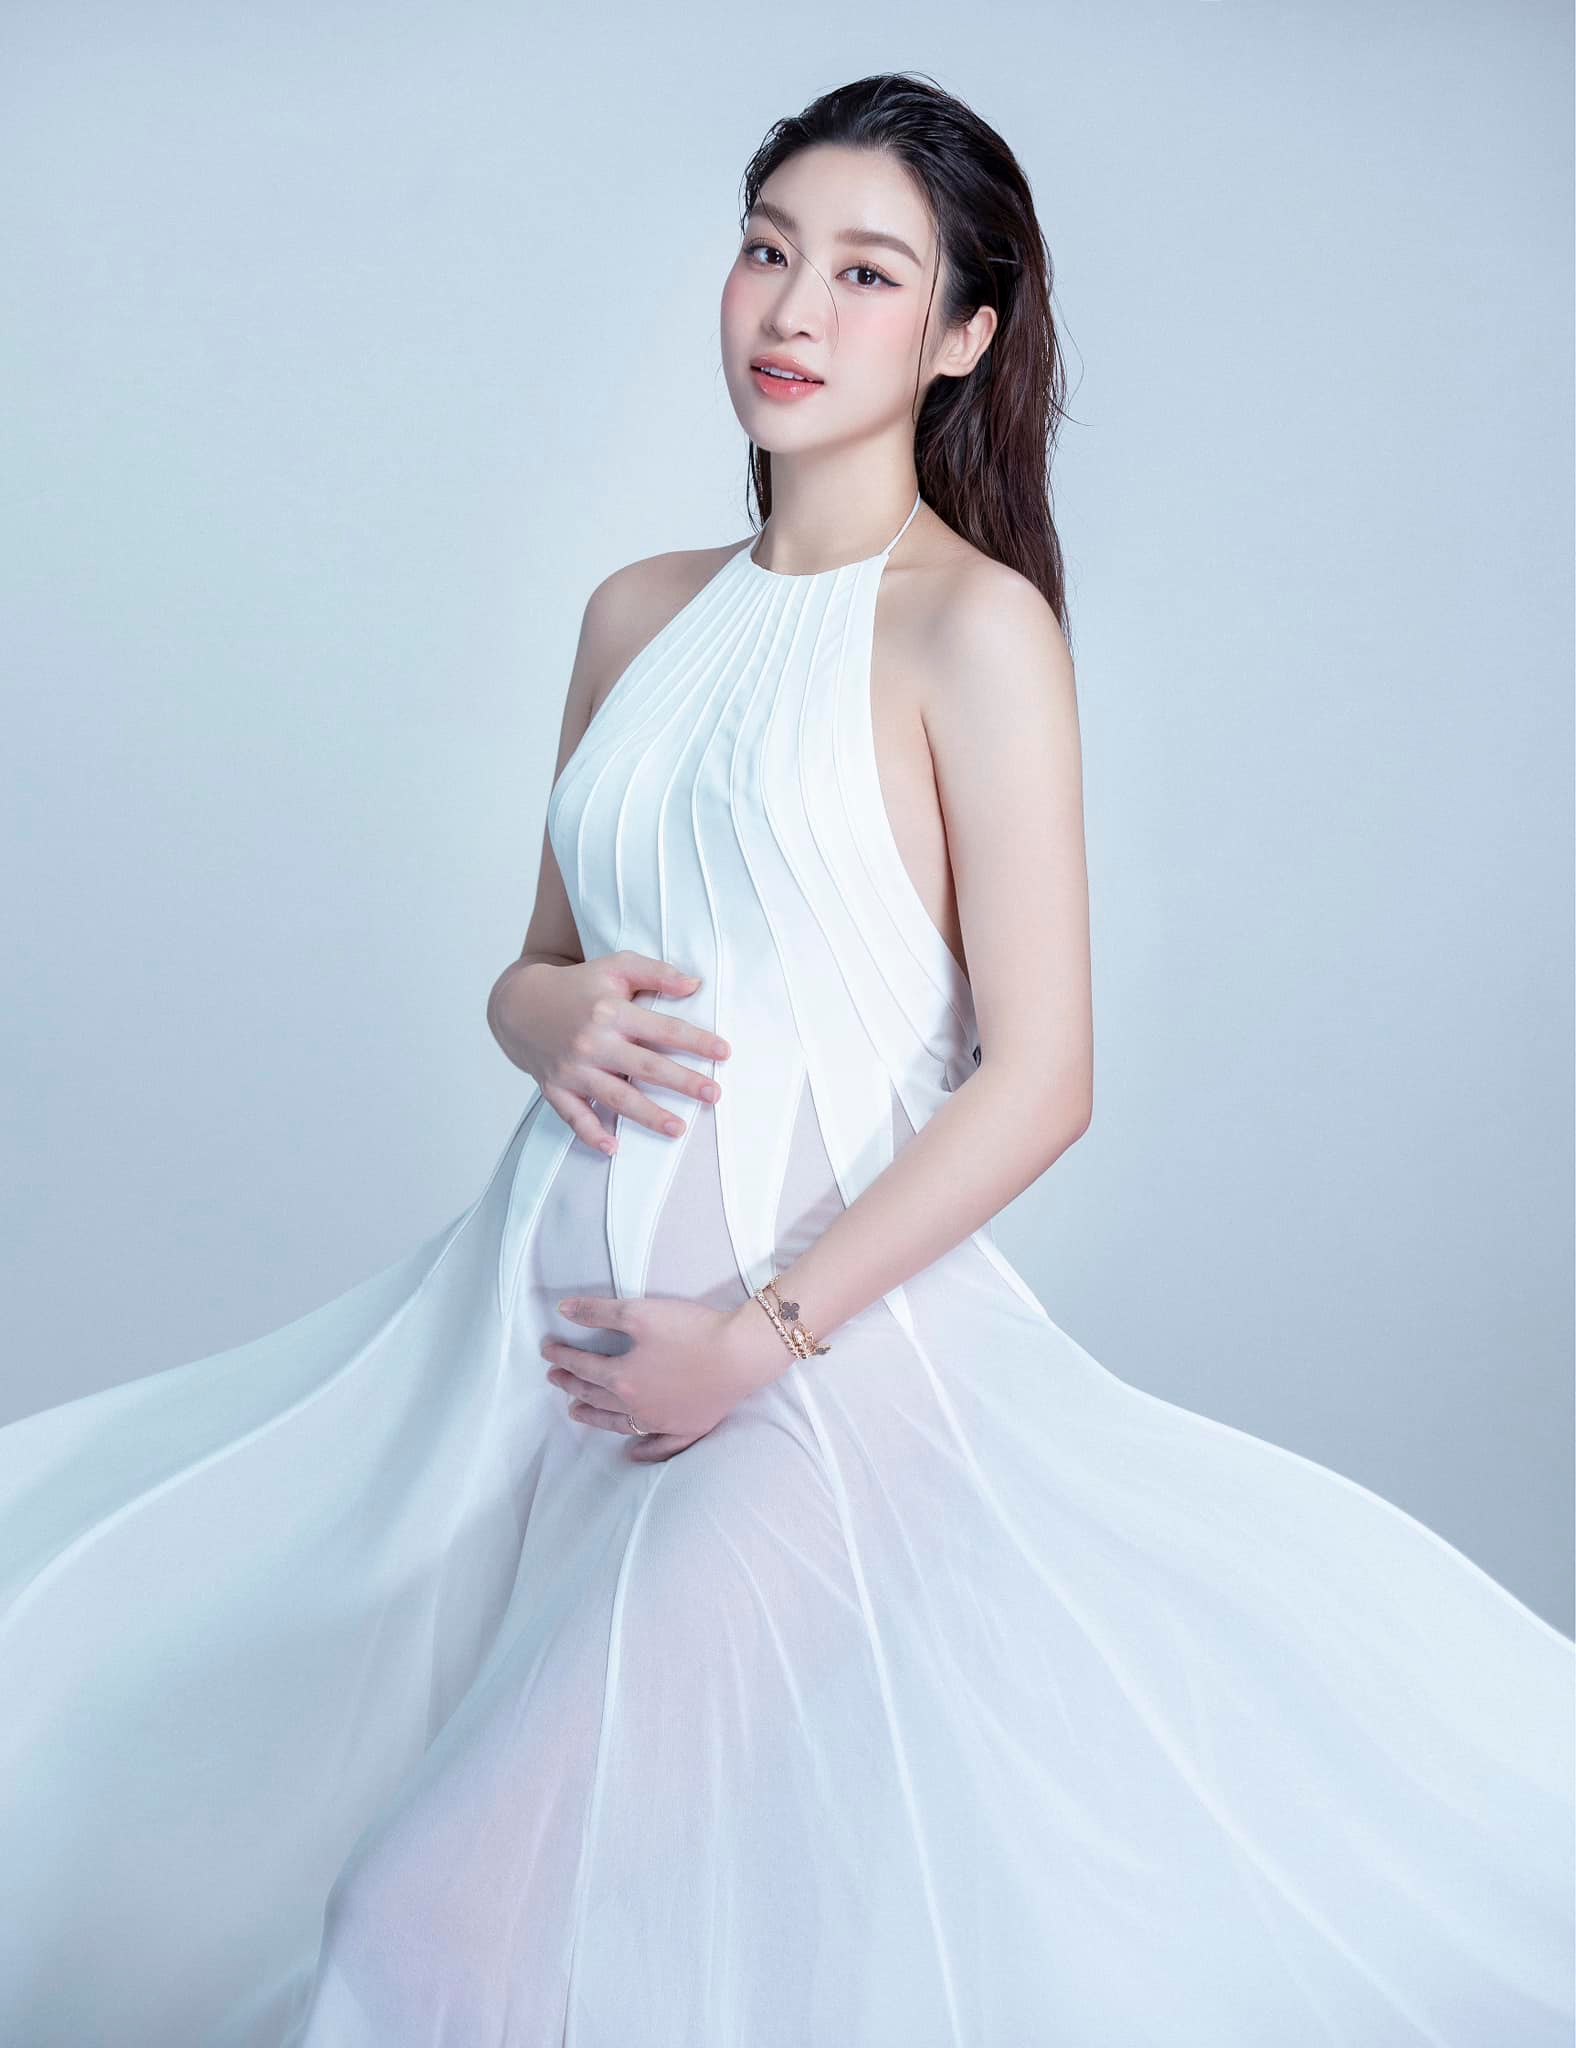 Hoa hậu Đỗ Mỹ Linh lần đầu đăng ảnh mang thai con đầu lòng nhân dịp 7 năm đăng quang - Ảnh 9.